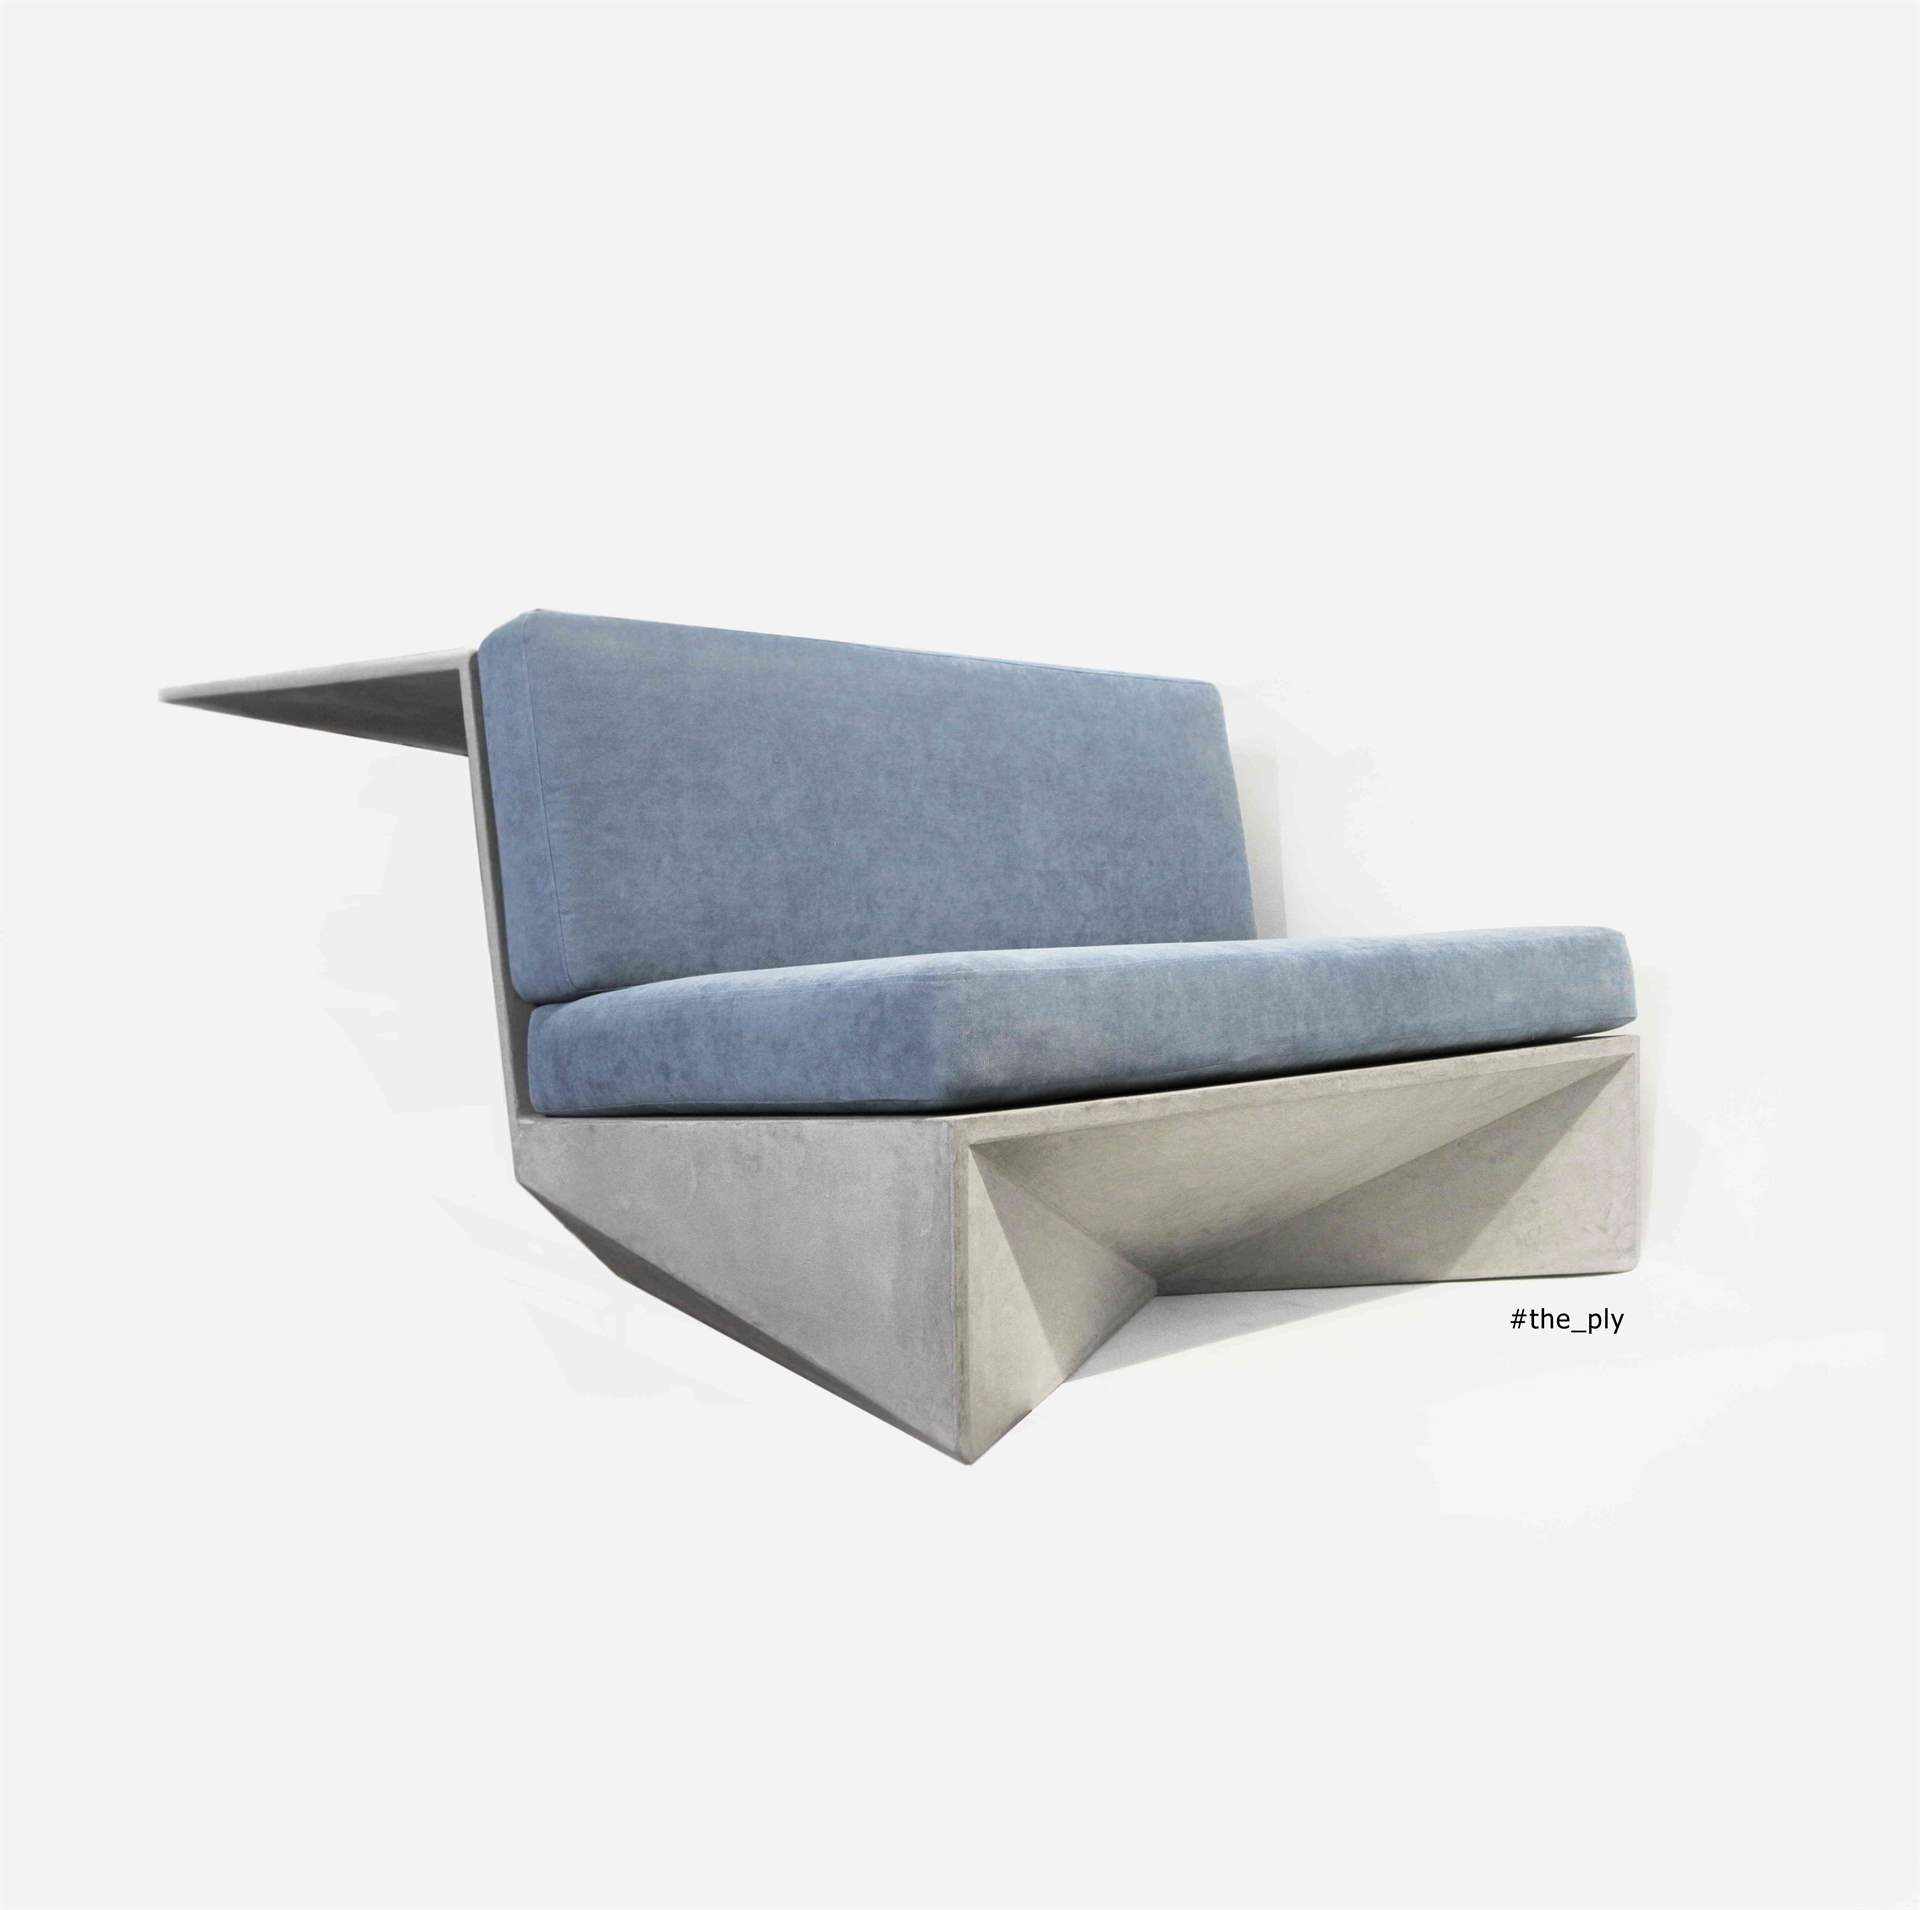 Mikrozement-Sofa in Grau mit blauen Kissen.